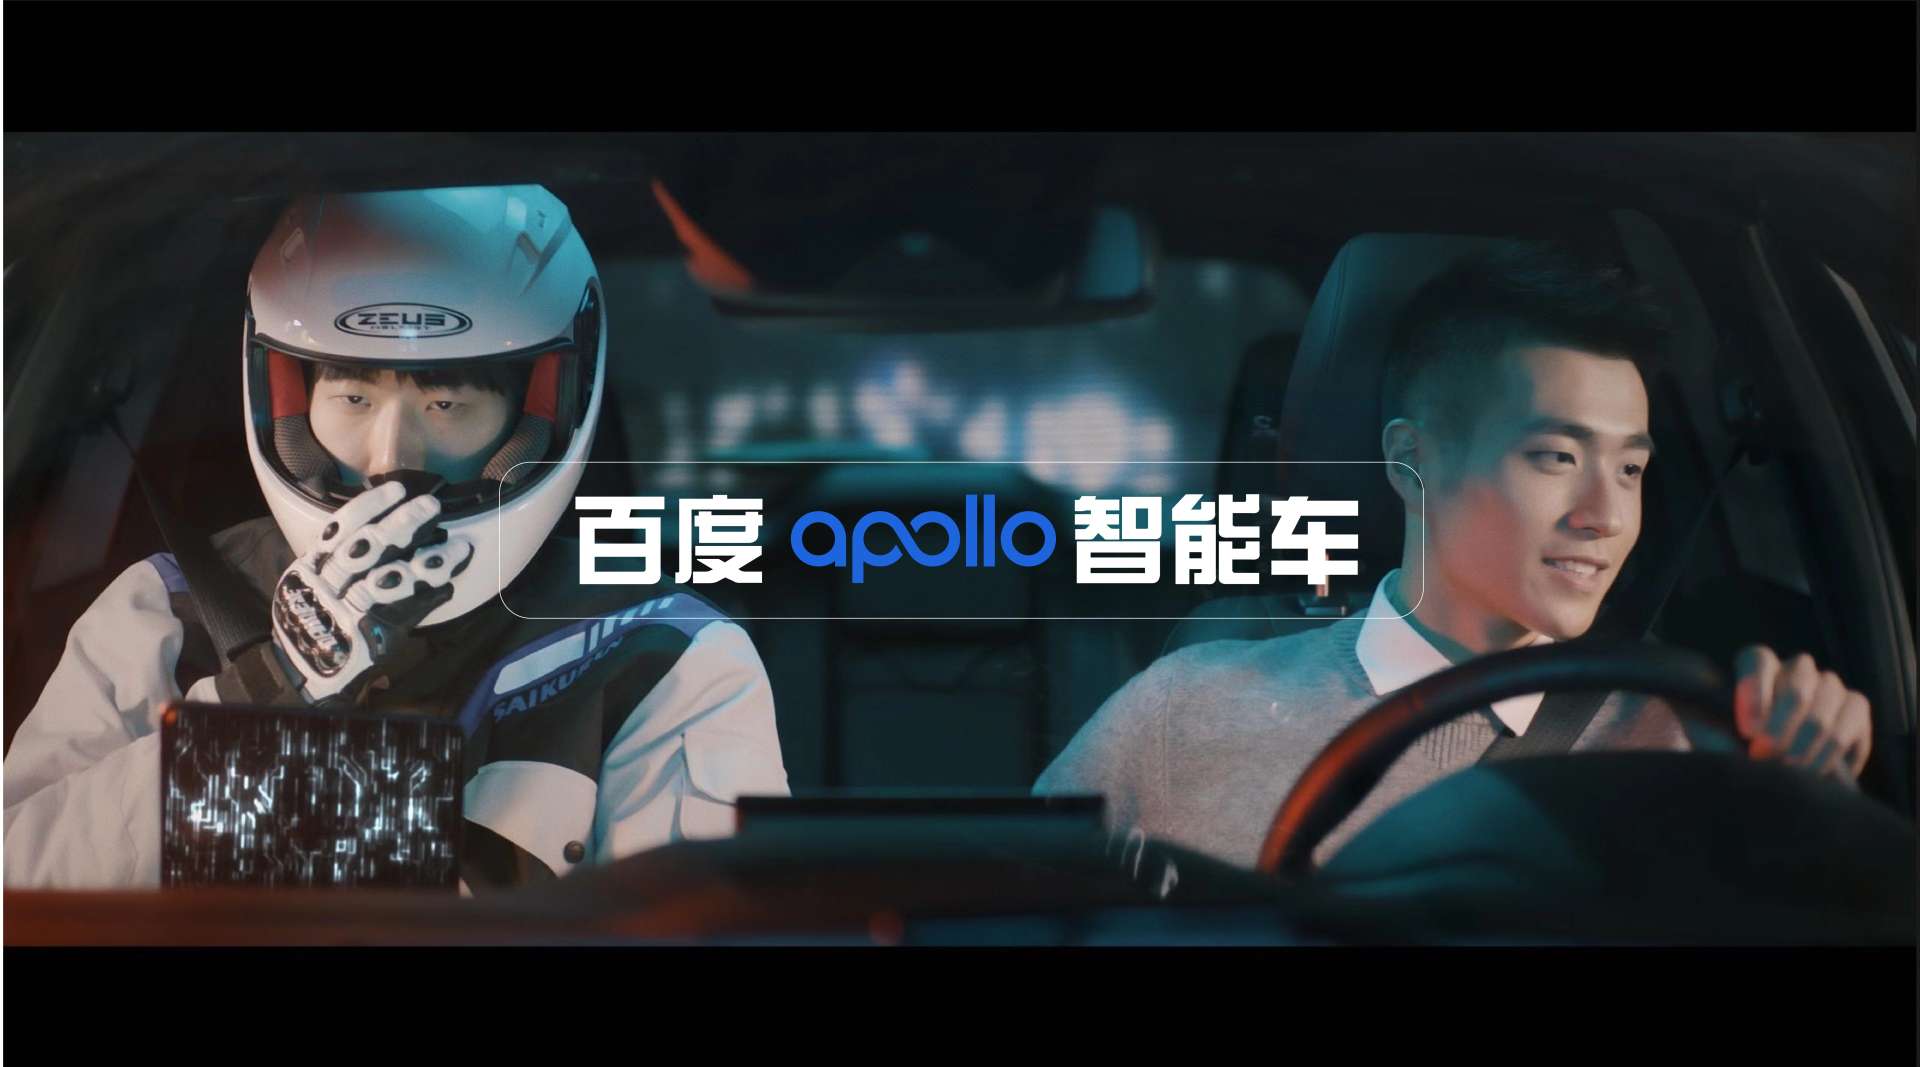 百度Apollo智能车联人机共驾智能座舱车载地图视频